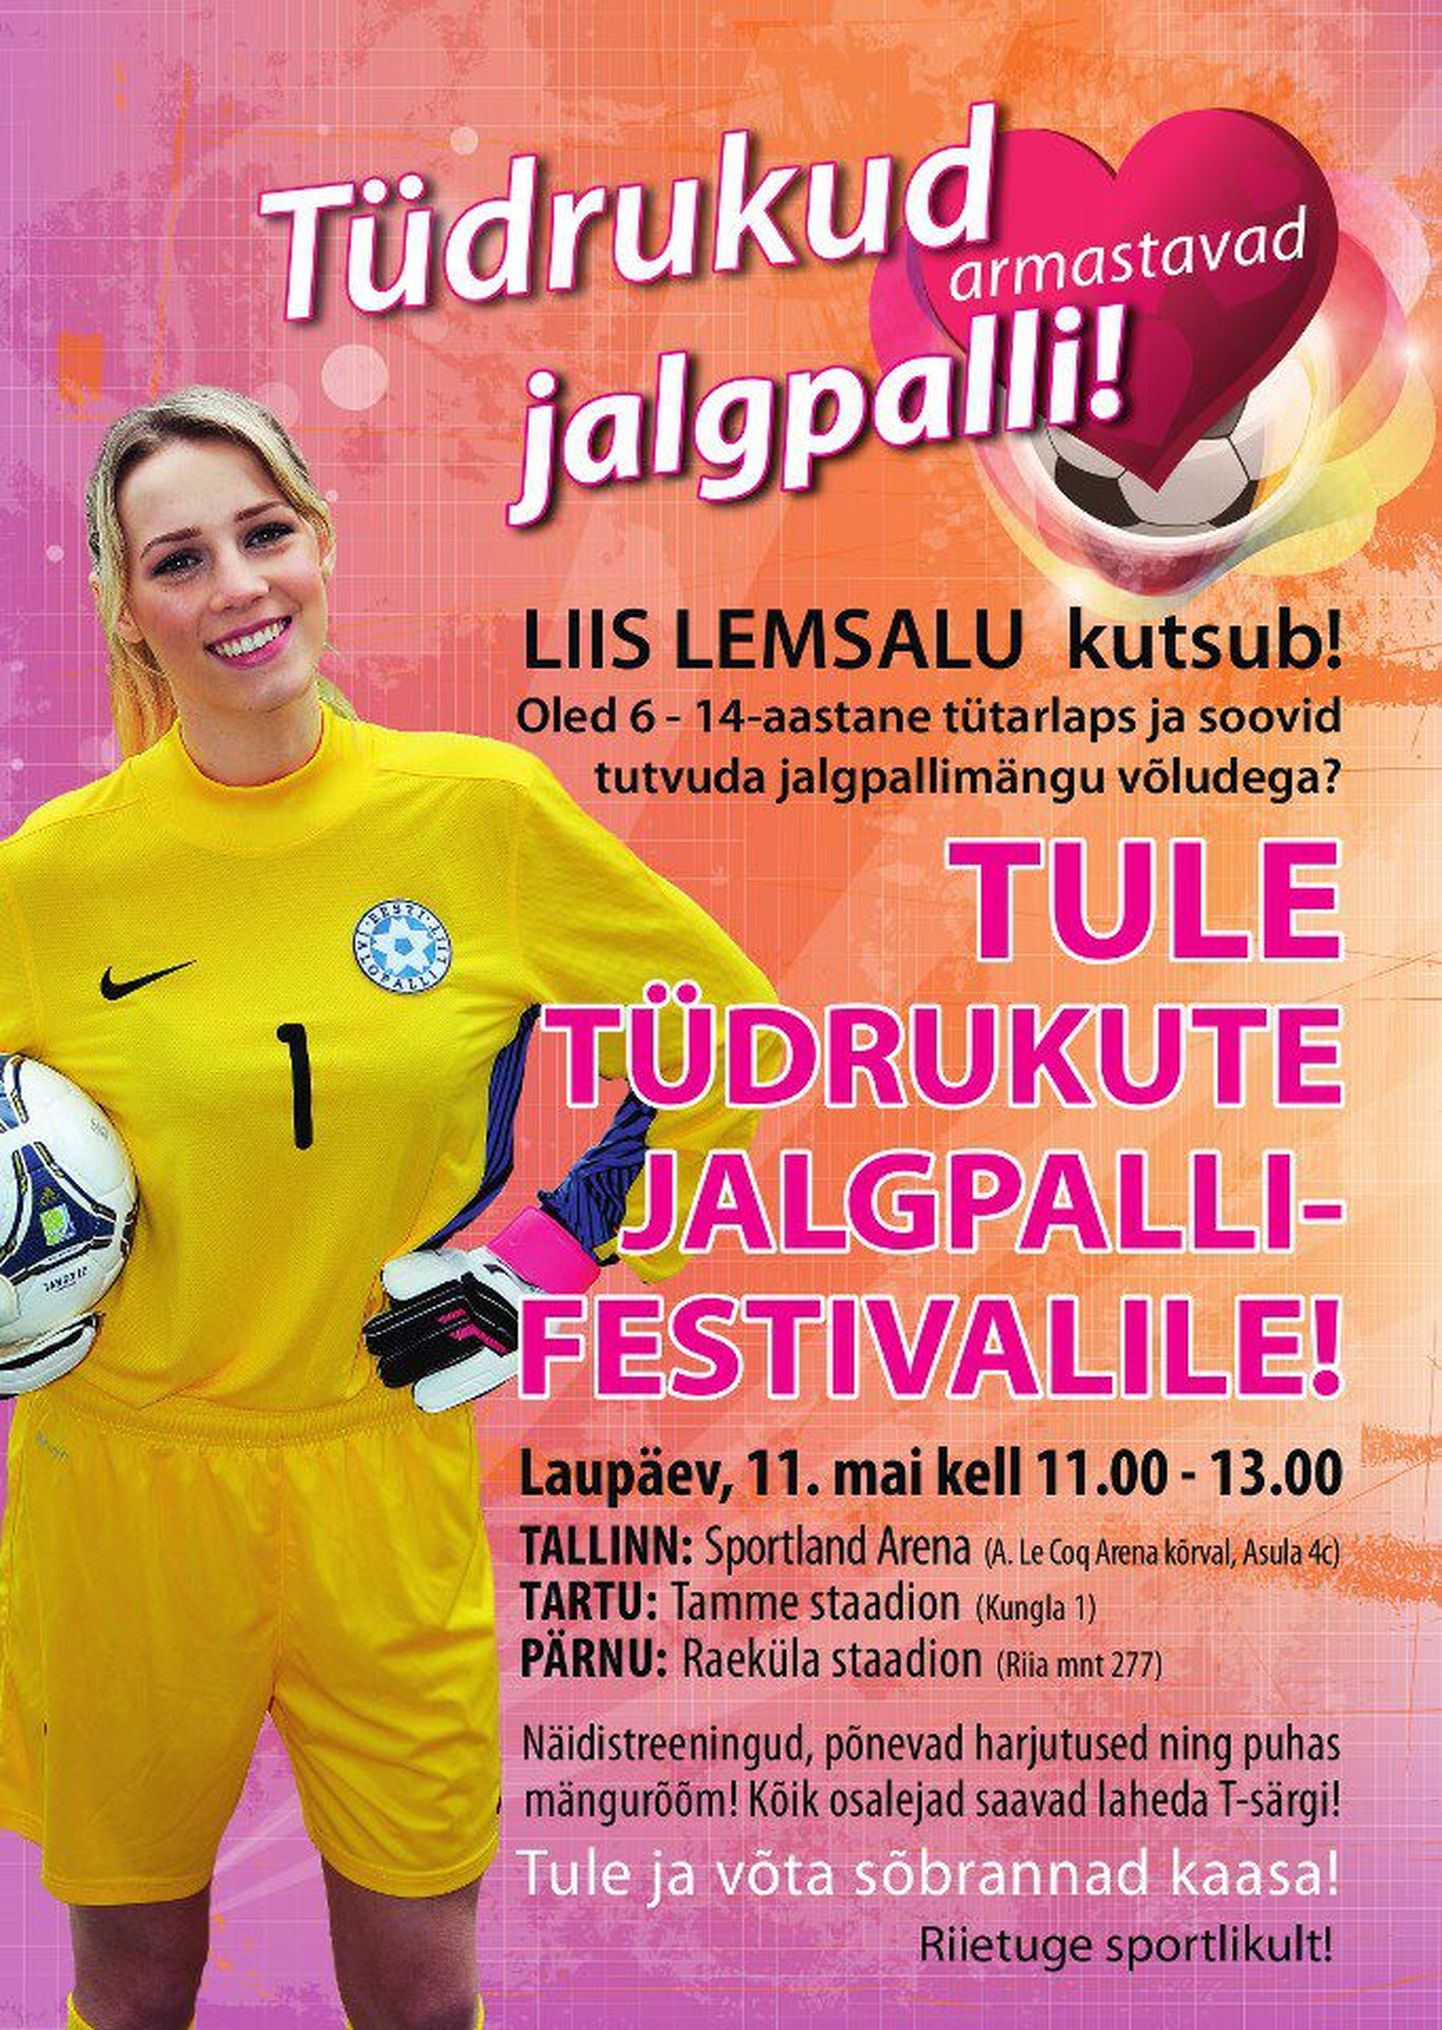 Liis Lemsalu kutsub tüdrukute jalgpallifestivalile.